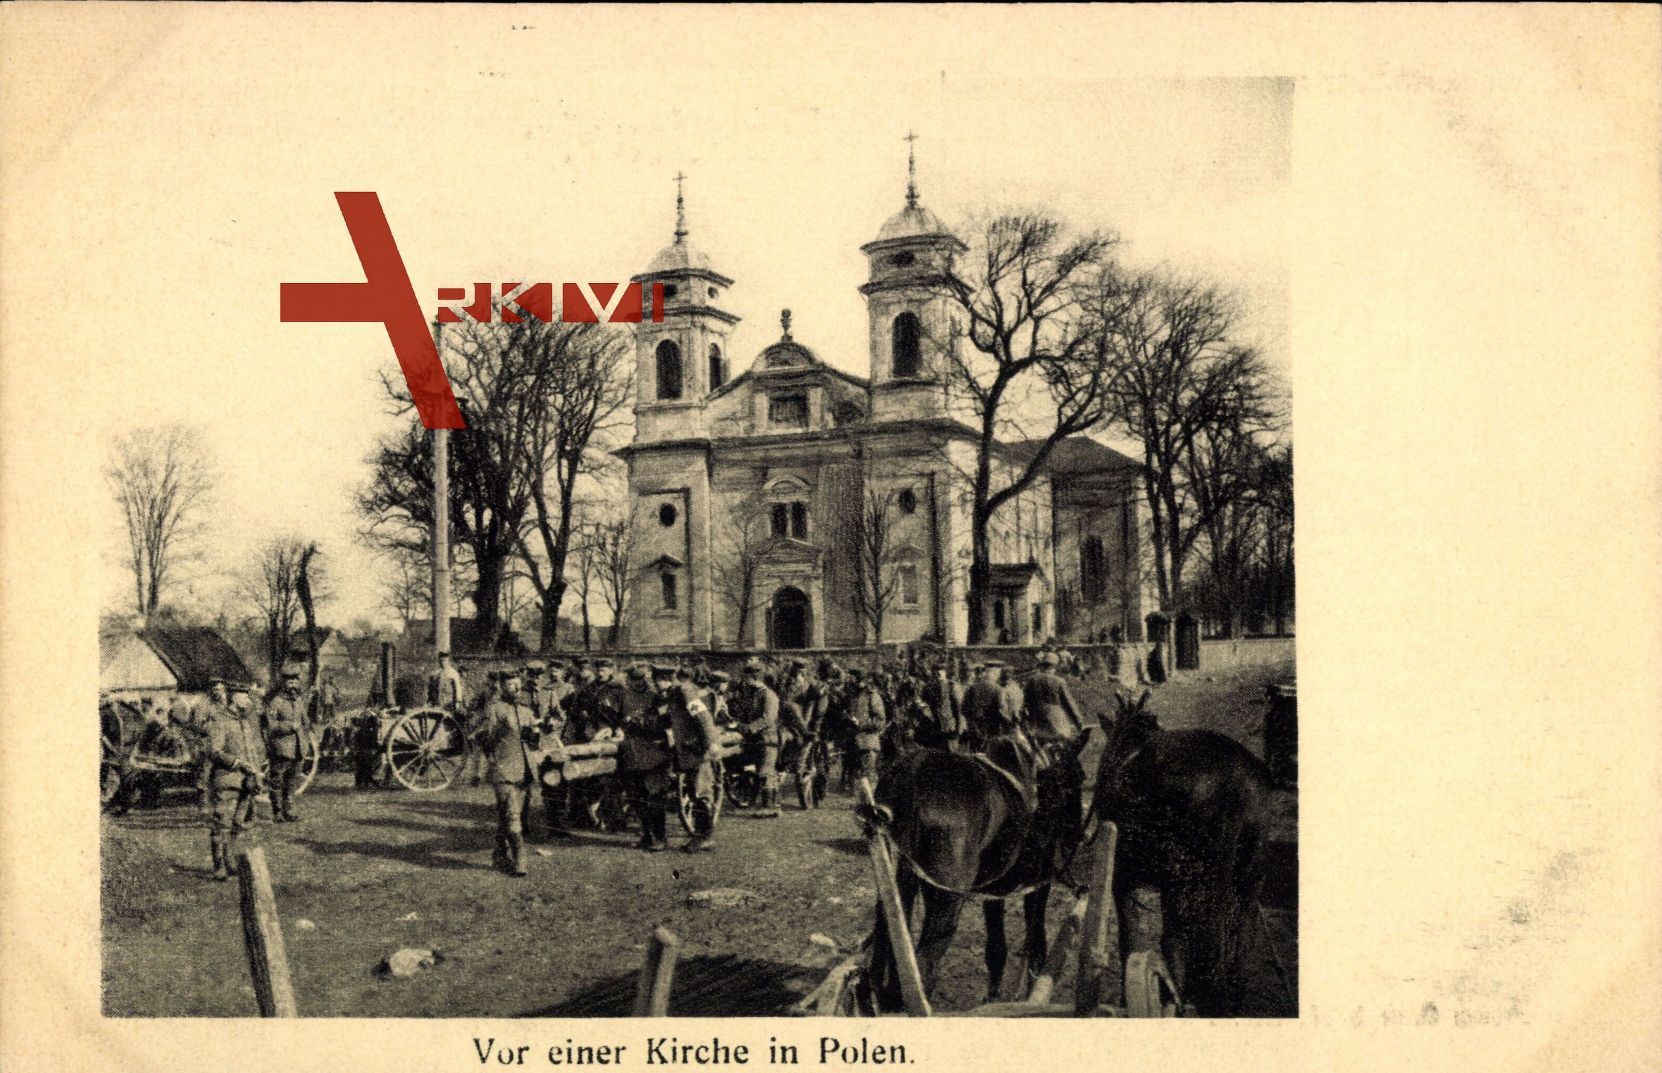 Vor einer Kirche in Polen, Soldaten auf einem Platz